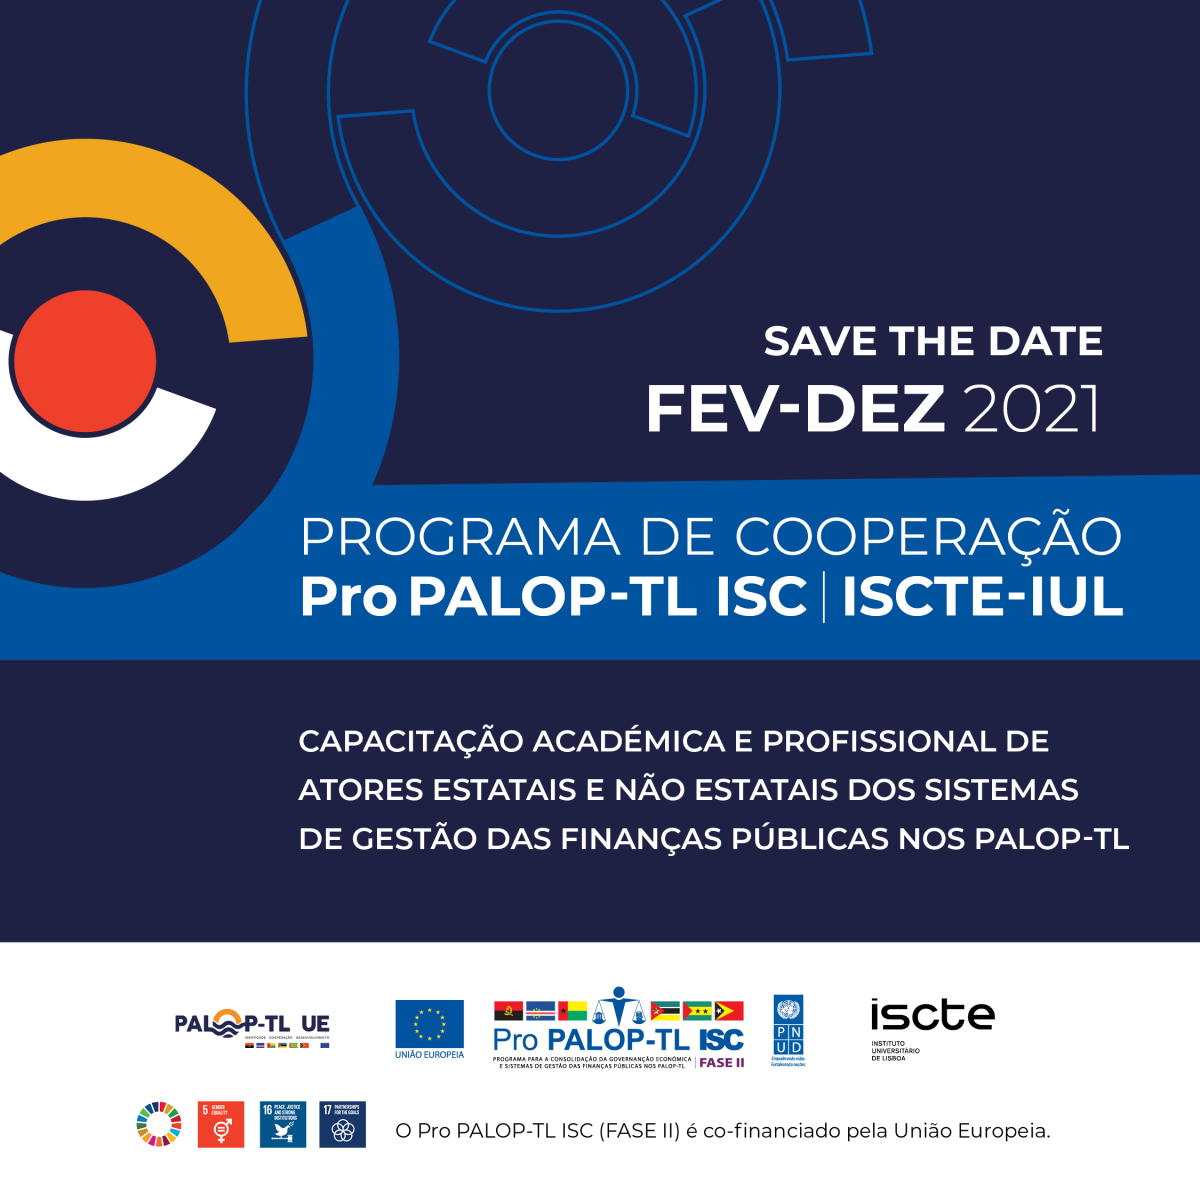 Acordo de Cooperação Pro PALOP-TL ISC | Iscte-IUL